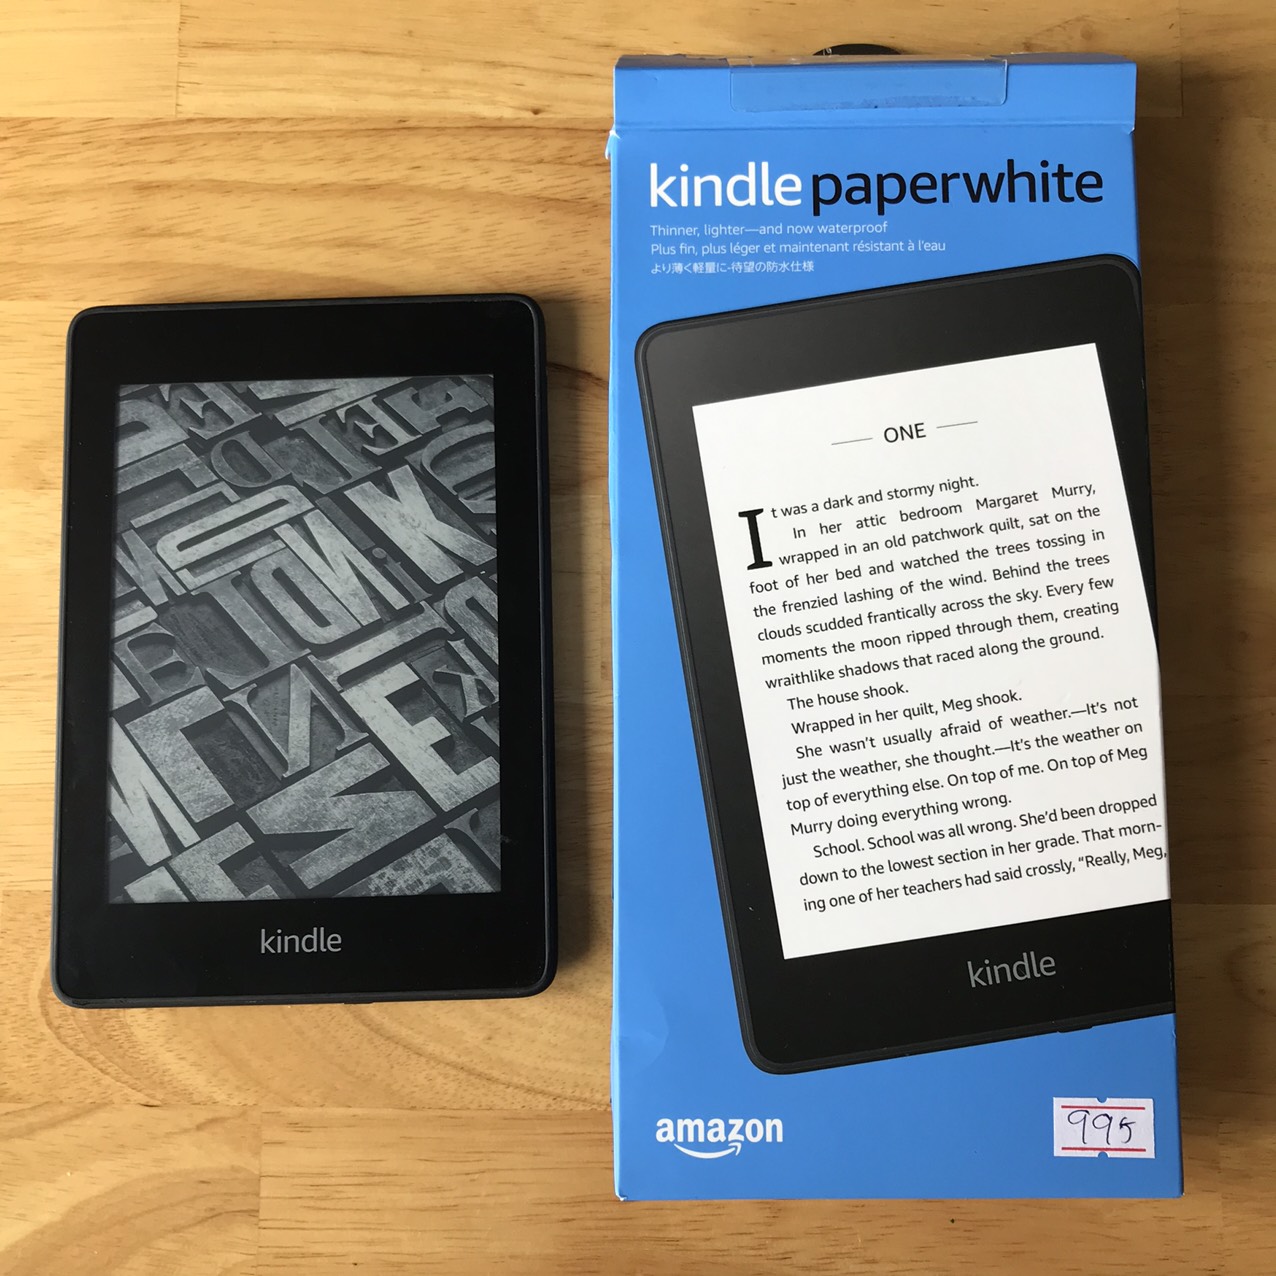 Kindle Paperwhite Gen 4 được trang bị các tính năng tiên tiến giúp bạn trải nghiệm đọc sách thuận tiện hơn bao giờ hết. Từ hiển thị sắc nét đến thời lượng pin lâu dài, Kindle Paperwhite Gen 4 chính là lựa chọn hoàn hảo cho những tín đồ yêu sách.